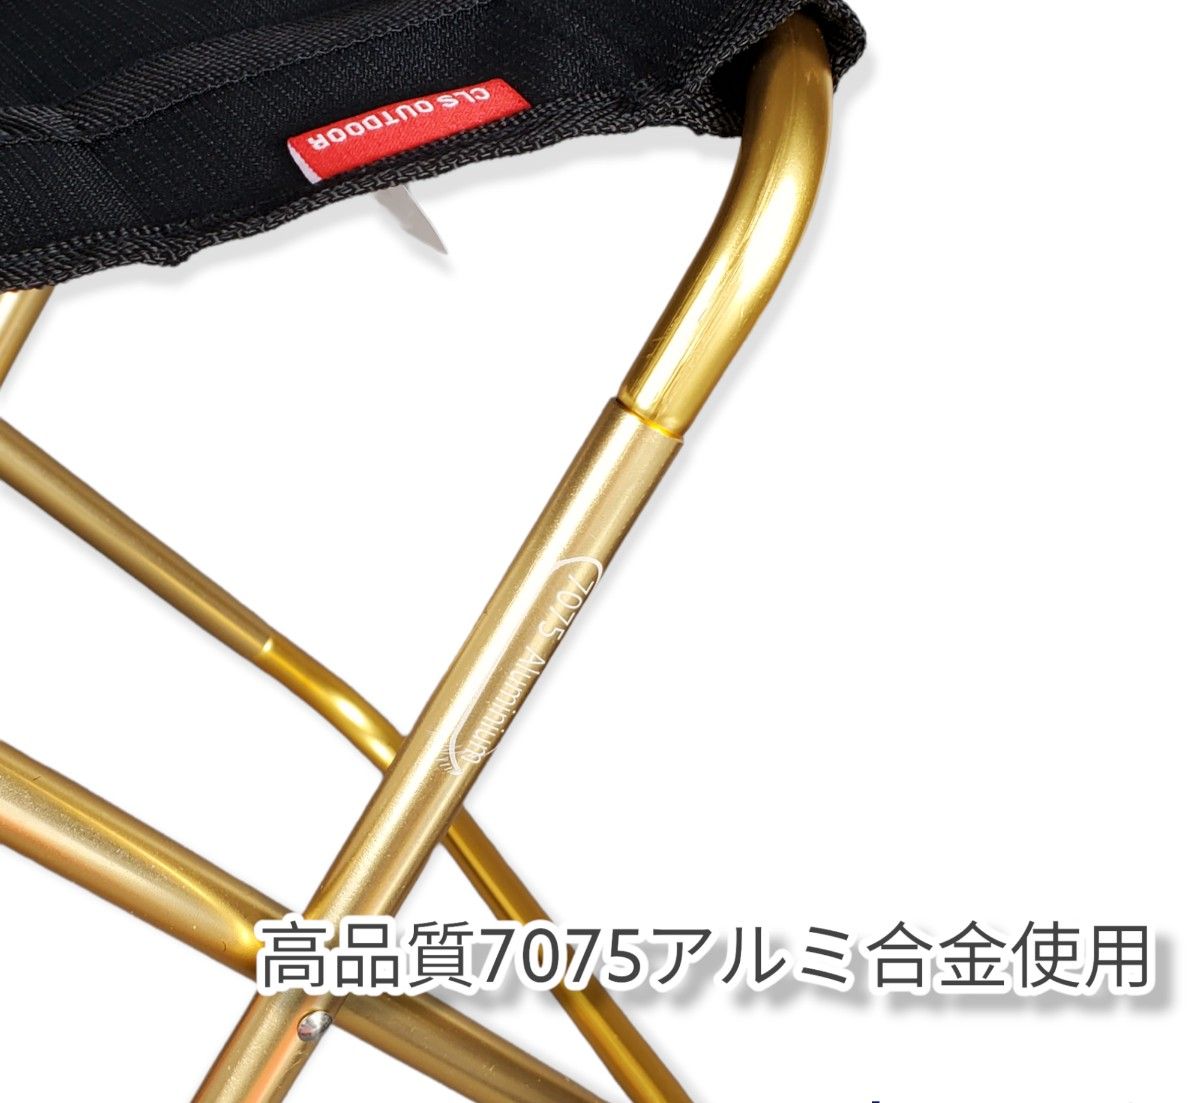 春セール!!アウトドア 折り畳み椅子 ゴールド 超軽量 収納袋付 持ち運び便利  コンパクト